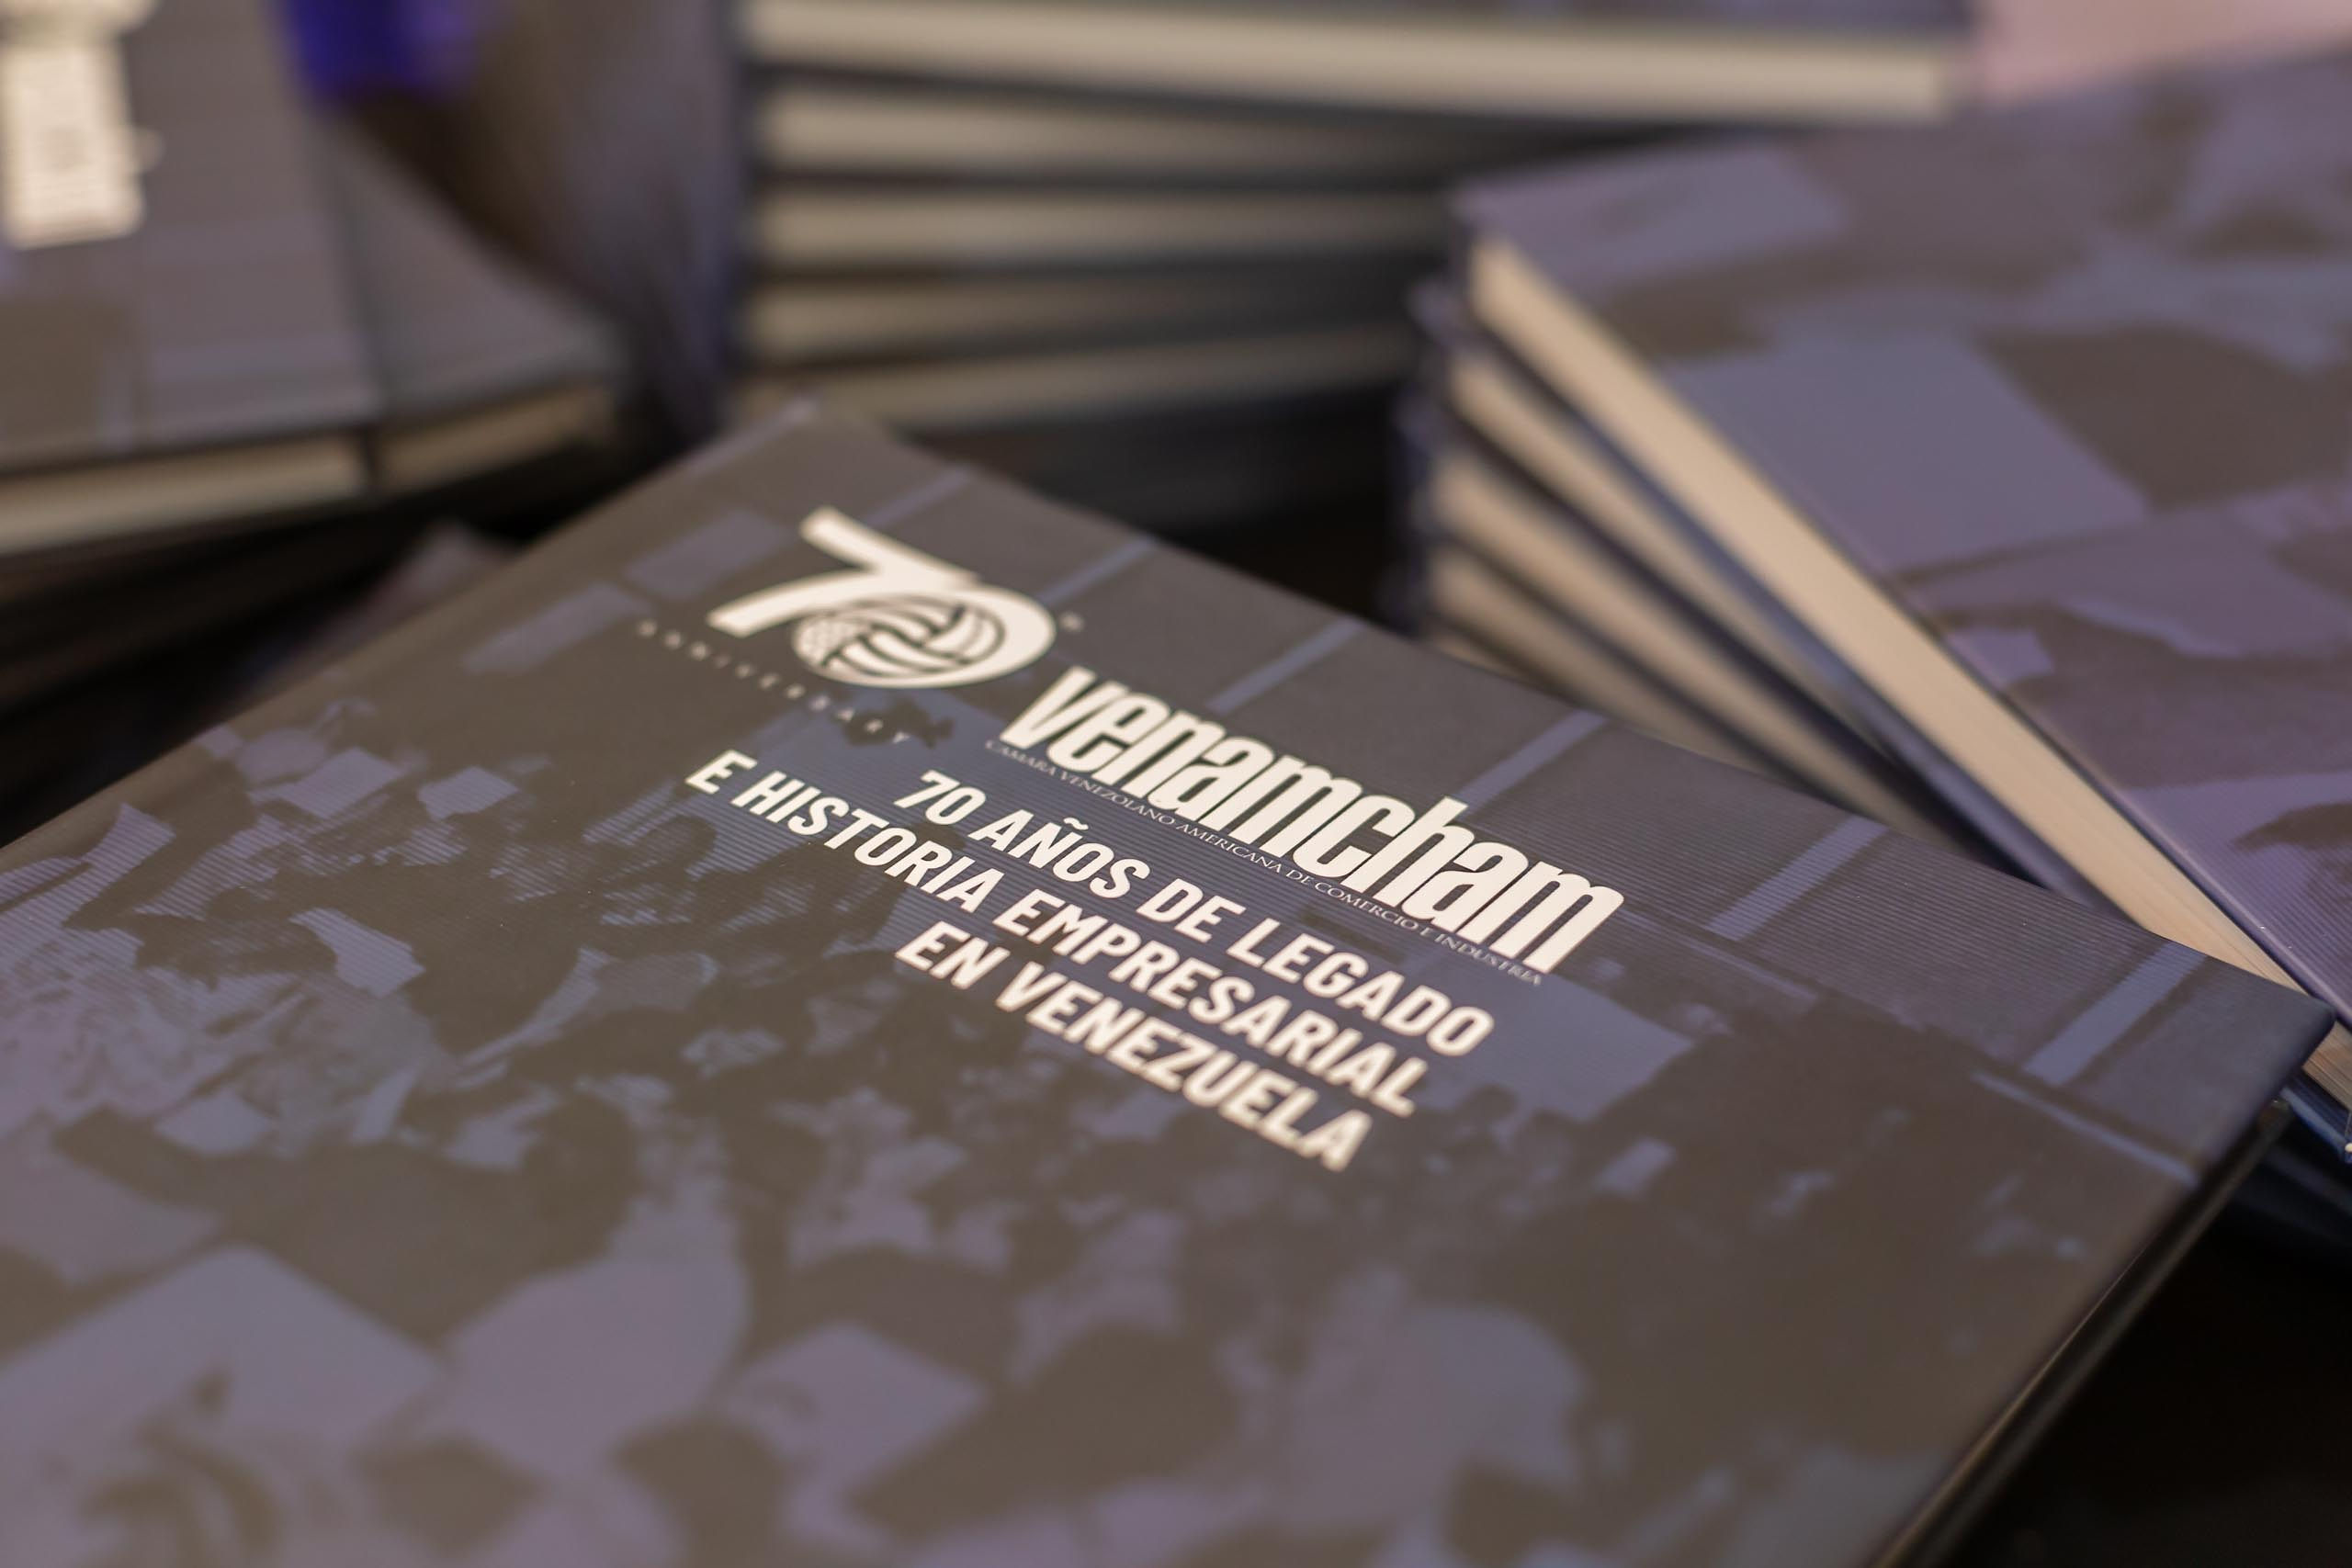 VenAmCham presentó su libro “70 años de legado e historia empresarial en Venezuela”, que cuenta parte de su historia